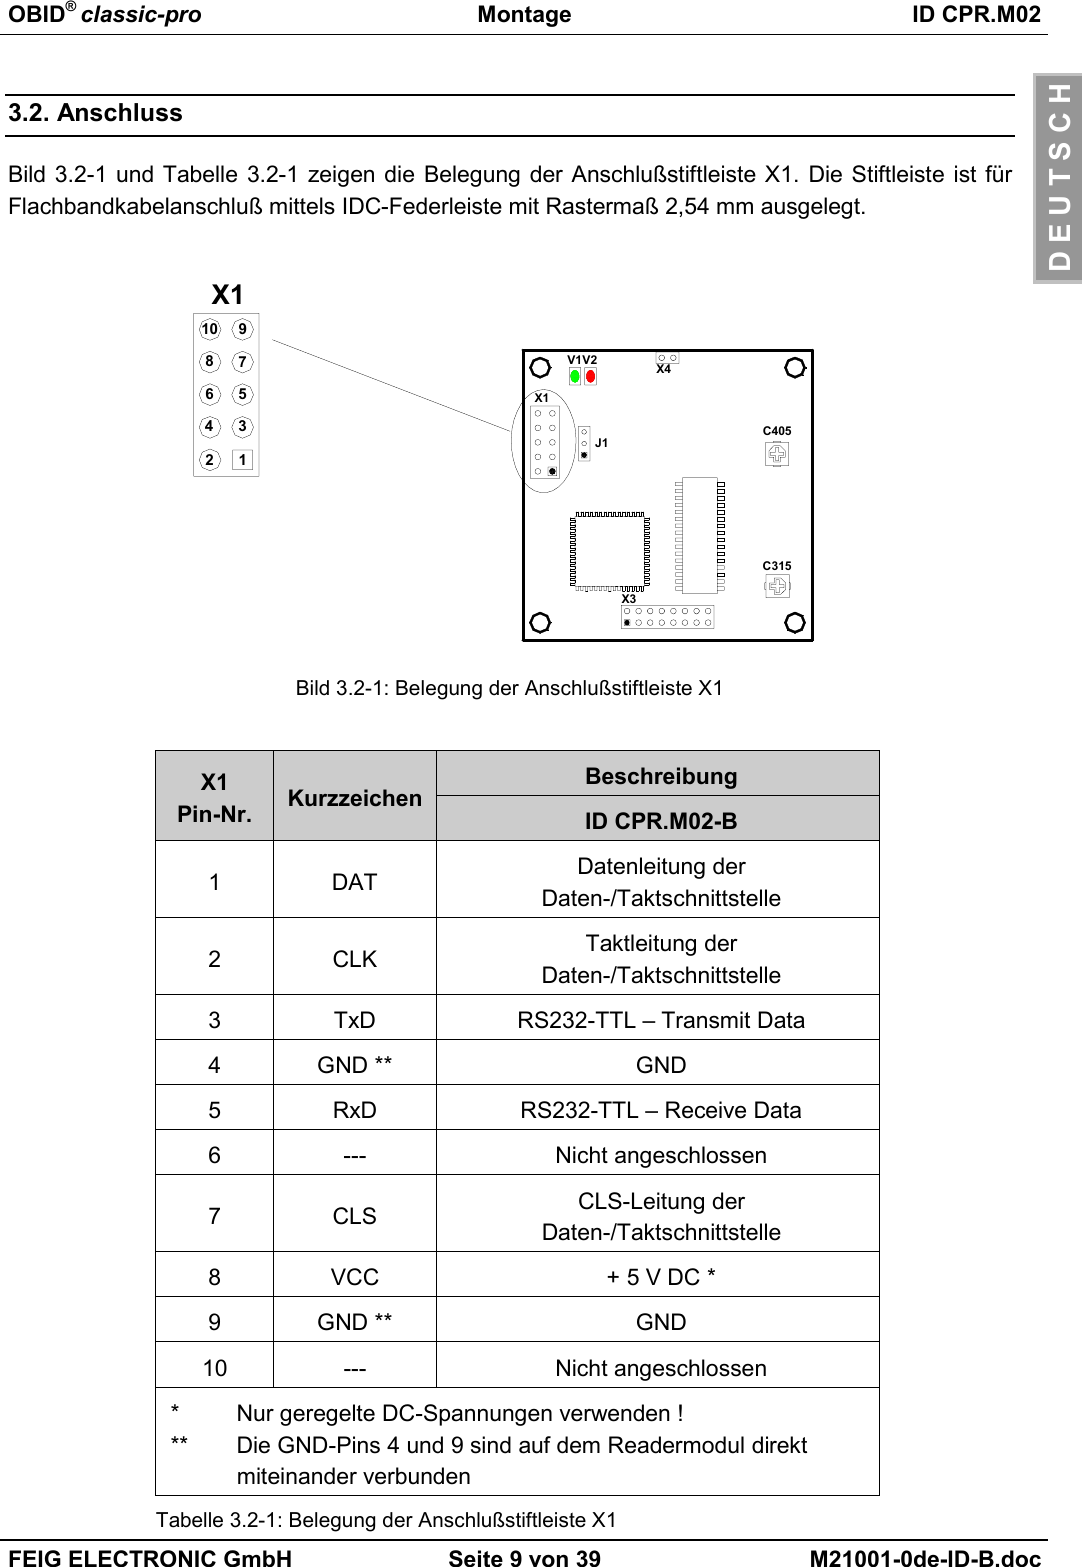 OBID® classic-pro Montage ID CPR.M02FEIG ELECTRONIC GmbH Seite 9 von 39 M21001-0de-ID-B.docD E U T S C H3.2. AnschlussBild 3.2-1 und Tabelle 3.2-1 zeigen die Belegung der Anschlußstiftleiste X1. Die Stiftleiste ist fürFlachbandkabelanschluß mittels IDC-Federleiste mit Rastermaß 2,54 mm ausgelegt.Bild 3.2-1: Belegung der Anschlußstiftleiste X1BeschreibungX1Pin-Nr. Kurzzeichen ID CPR.M02-B1DAT Datenleitung derDaten-/Taktschnittstelle2CLK Taktleitung derDaten-/Taktschnittstelle3 TxD RS232-TTL – Transmit Data4 GND ** GND5 RxD RS232-TTL – Receive Data6 --- Nicht angeschlossen7CLS CLS-Leitung derDaten-/Taktschnittstelle8 VCC + 5 V DC *9 GND ** GND10 --- Nicht angeschlossen*  Nur geregelte DC-Spannungen verwenden !**  Die GND-Pins 4 und 9 sind auf dem Readermodul direkt miteinander verbundenTabelle 3.2-1: Belegung der Anschlußstiftleiste X1X1J1V2V1C315X112435796810X3X4C405